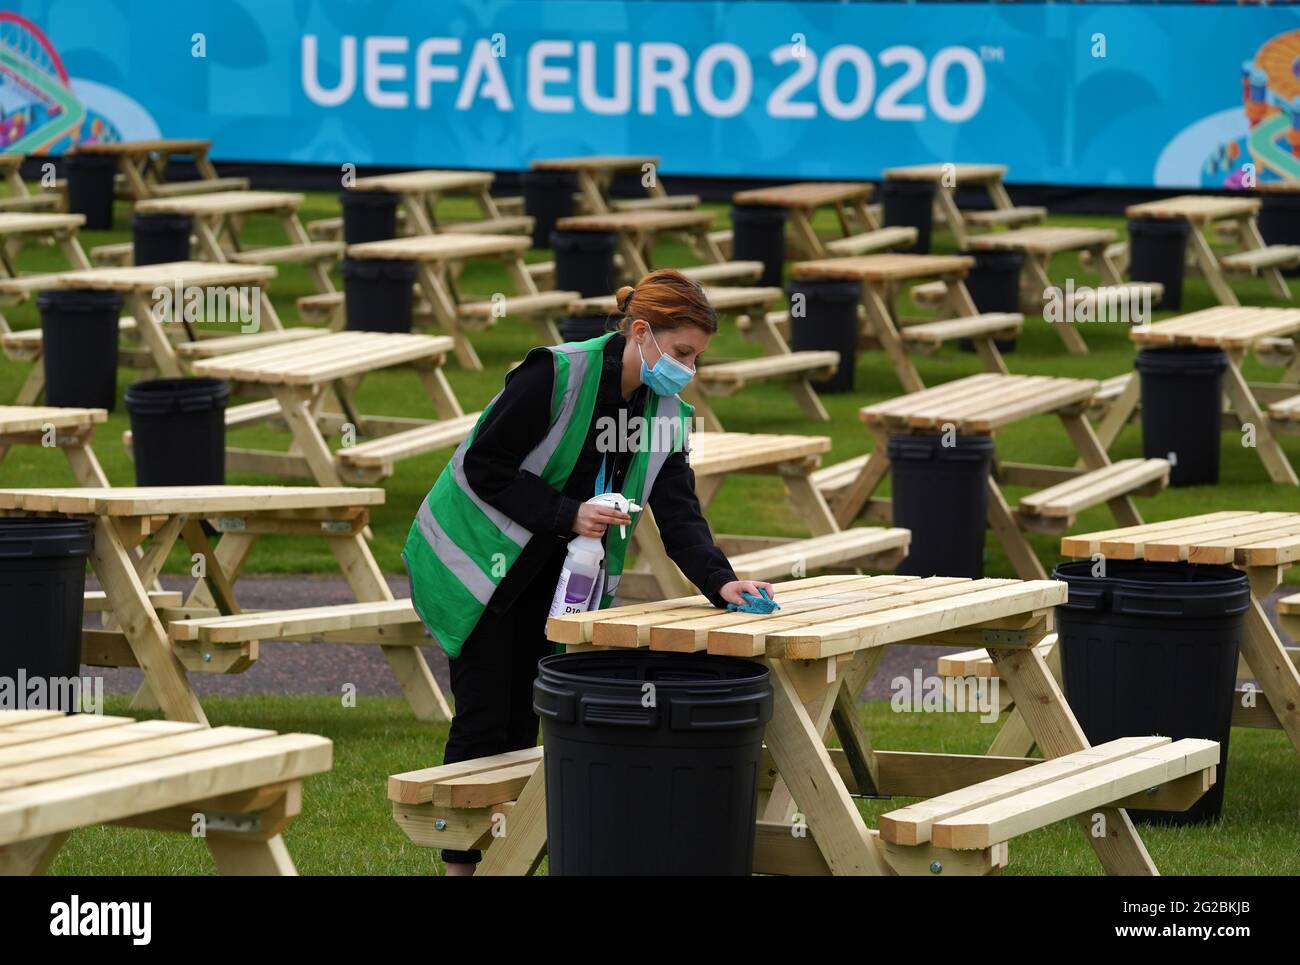 Uefa euro 2021 table